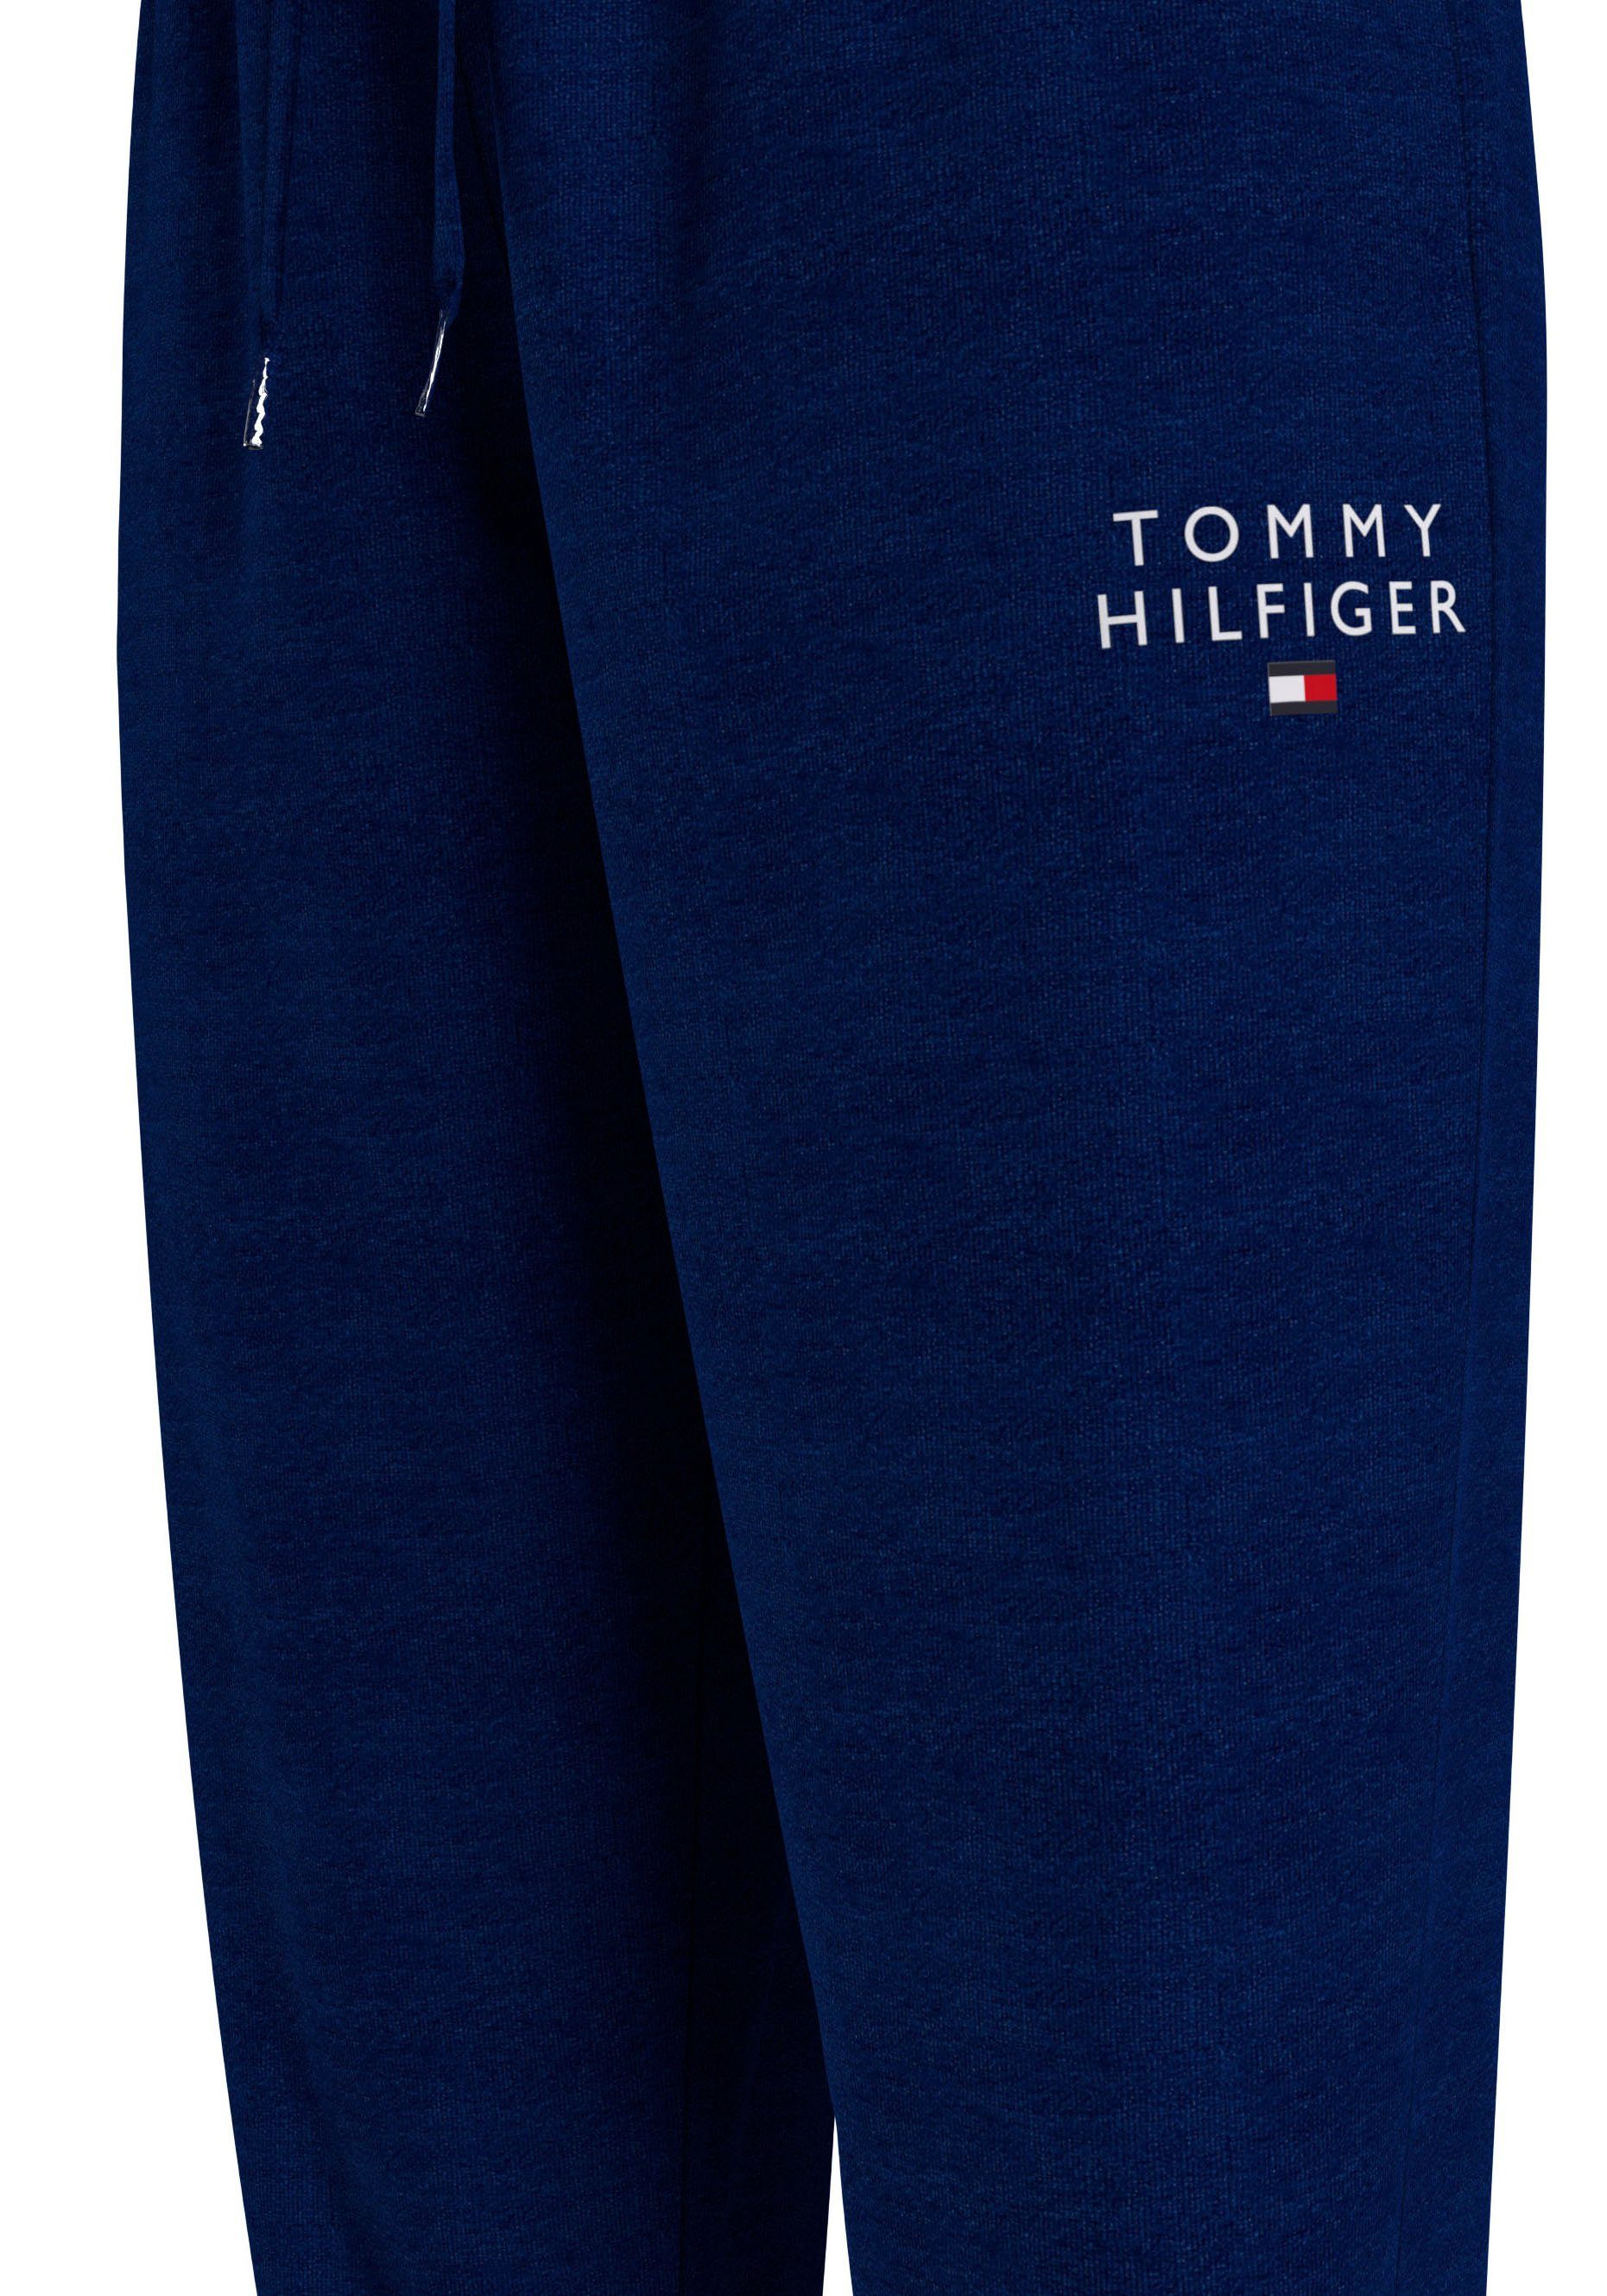 Tommy Hilfiger Underwear Sweathose PANTS mit Hilfiger Markenlogo-Aufdruck Tommy TRACK